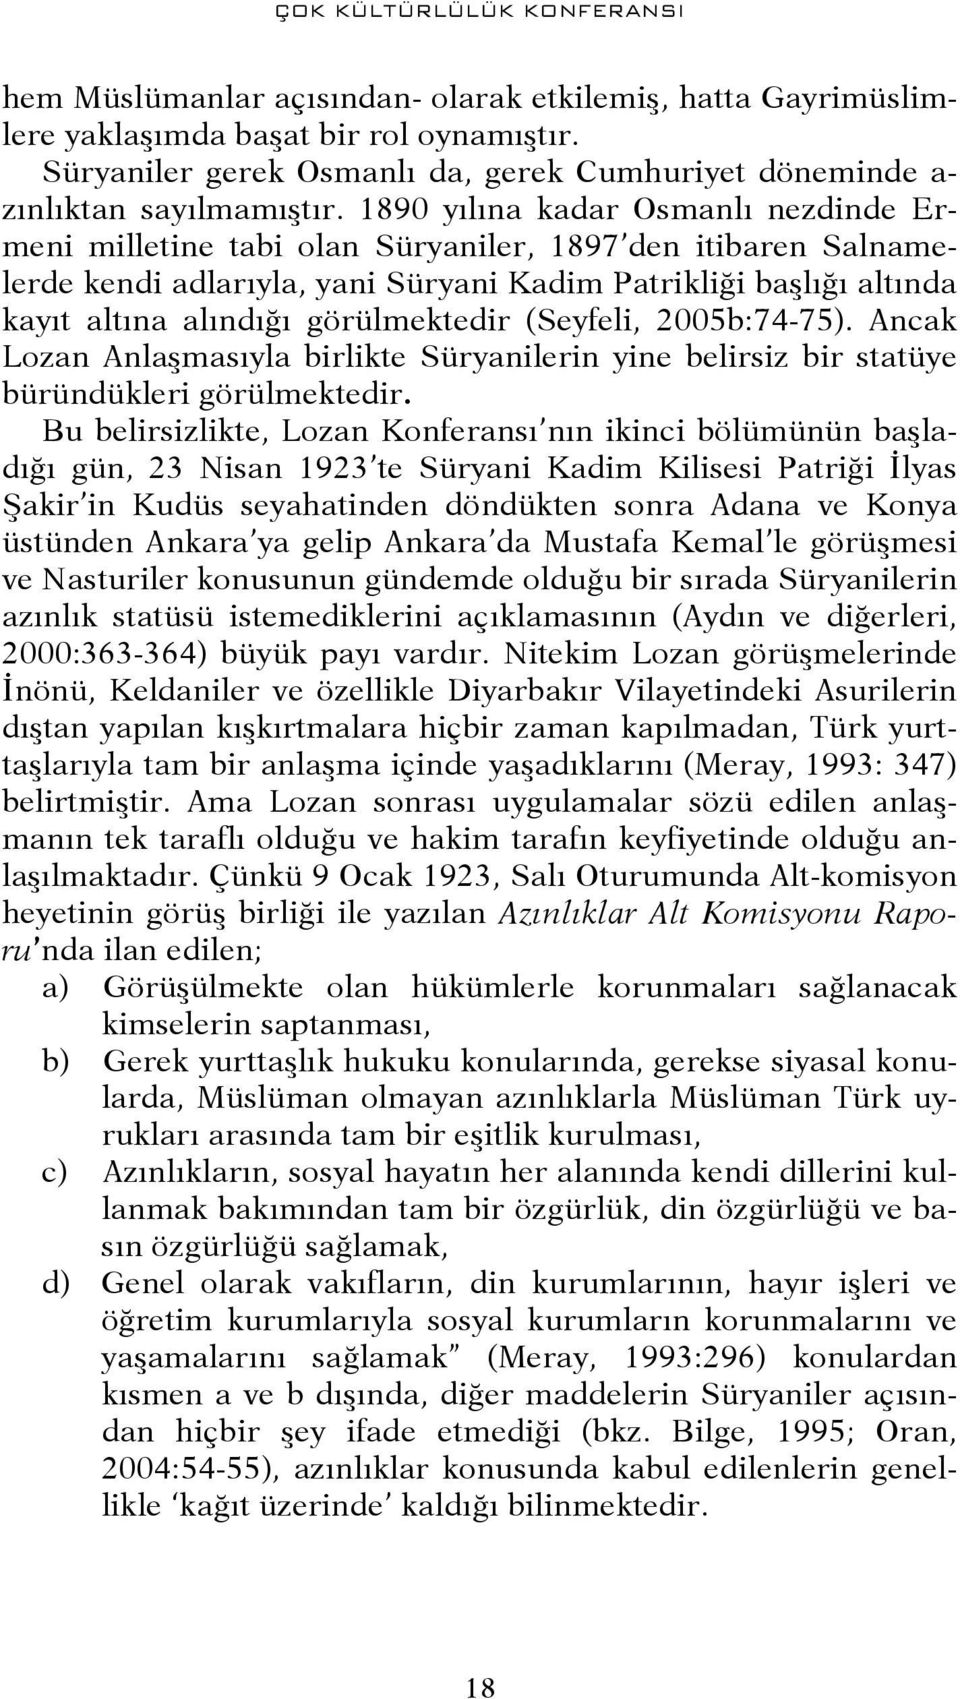 1890 yılına kadar Osmanlı nezdinde Ermeni milletine tabi olan Süryaniler, 1897 den itibaren Salnamelerde kendi adlarıyla, yani Süryani Kadim Patrikliği başlığı altında kayıt altına alındığı